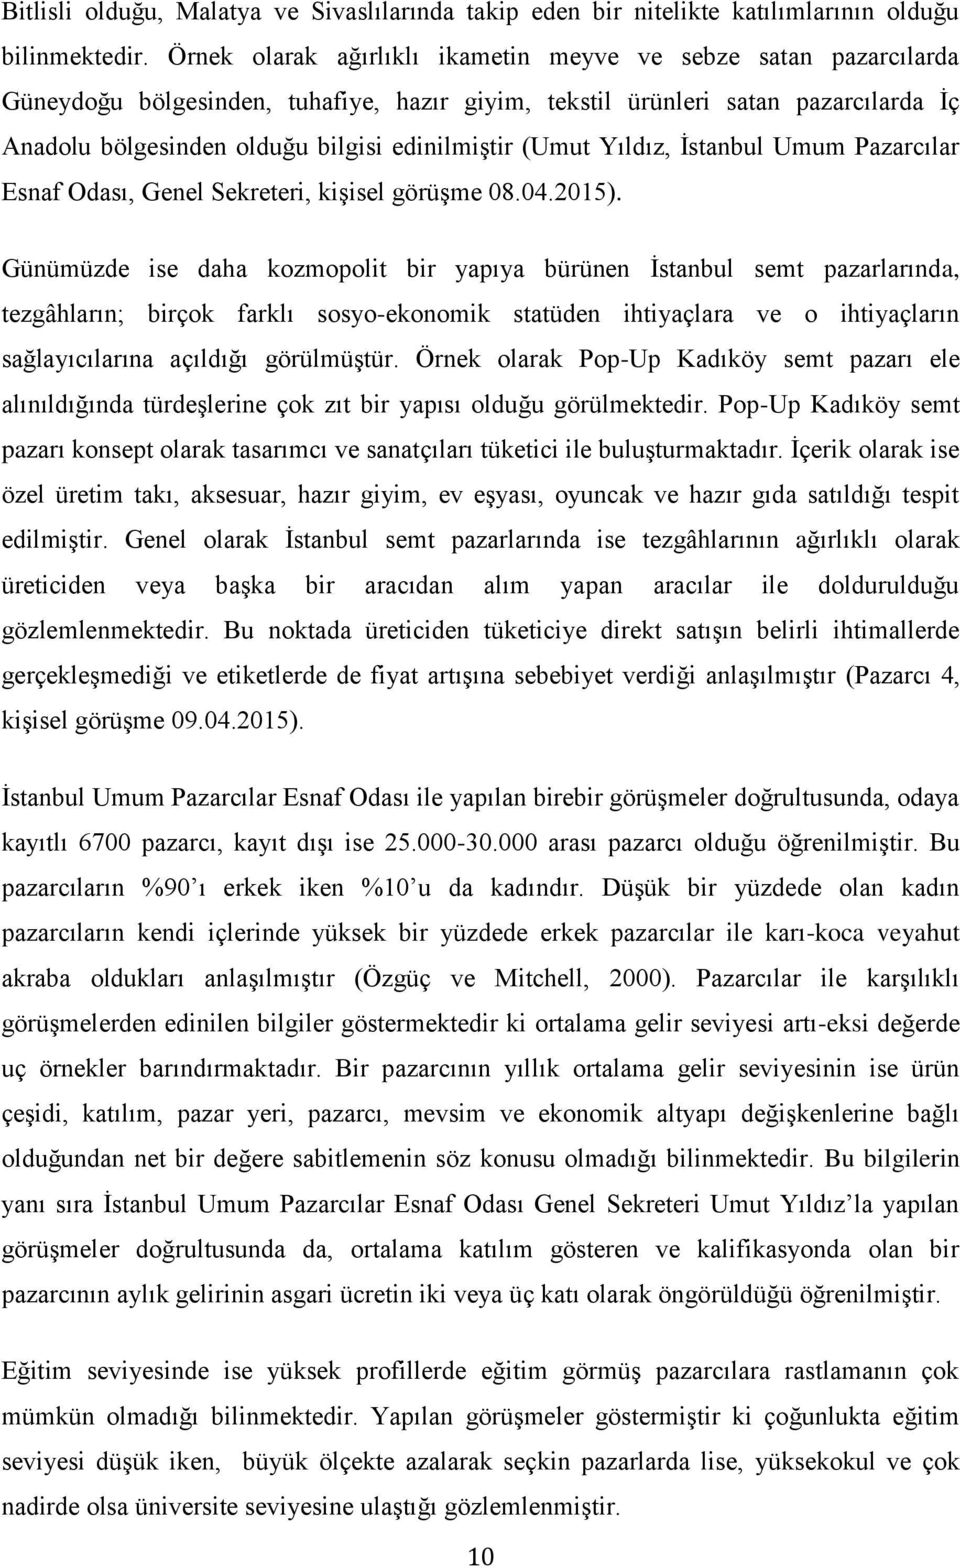 (Umut Yıldız, İstanbul Umum Pazarcılar Esnaf Odası, Genel Sekreteri, kişisel görüşme 08.04.2015).